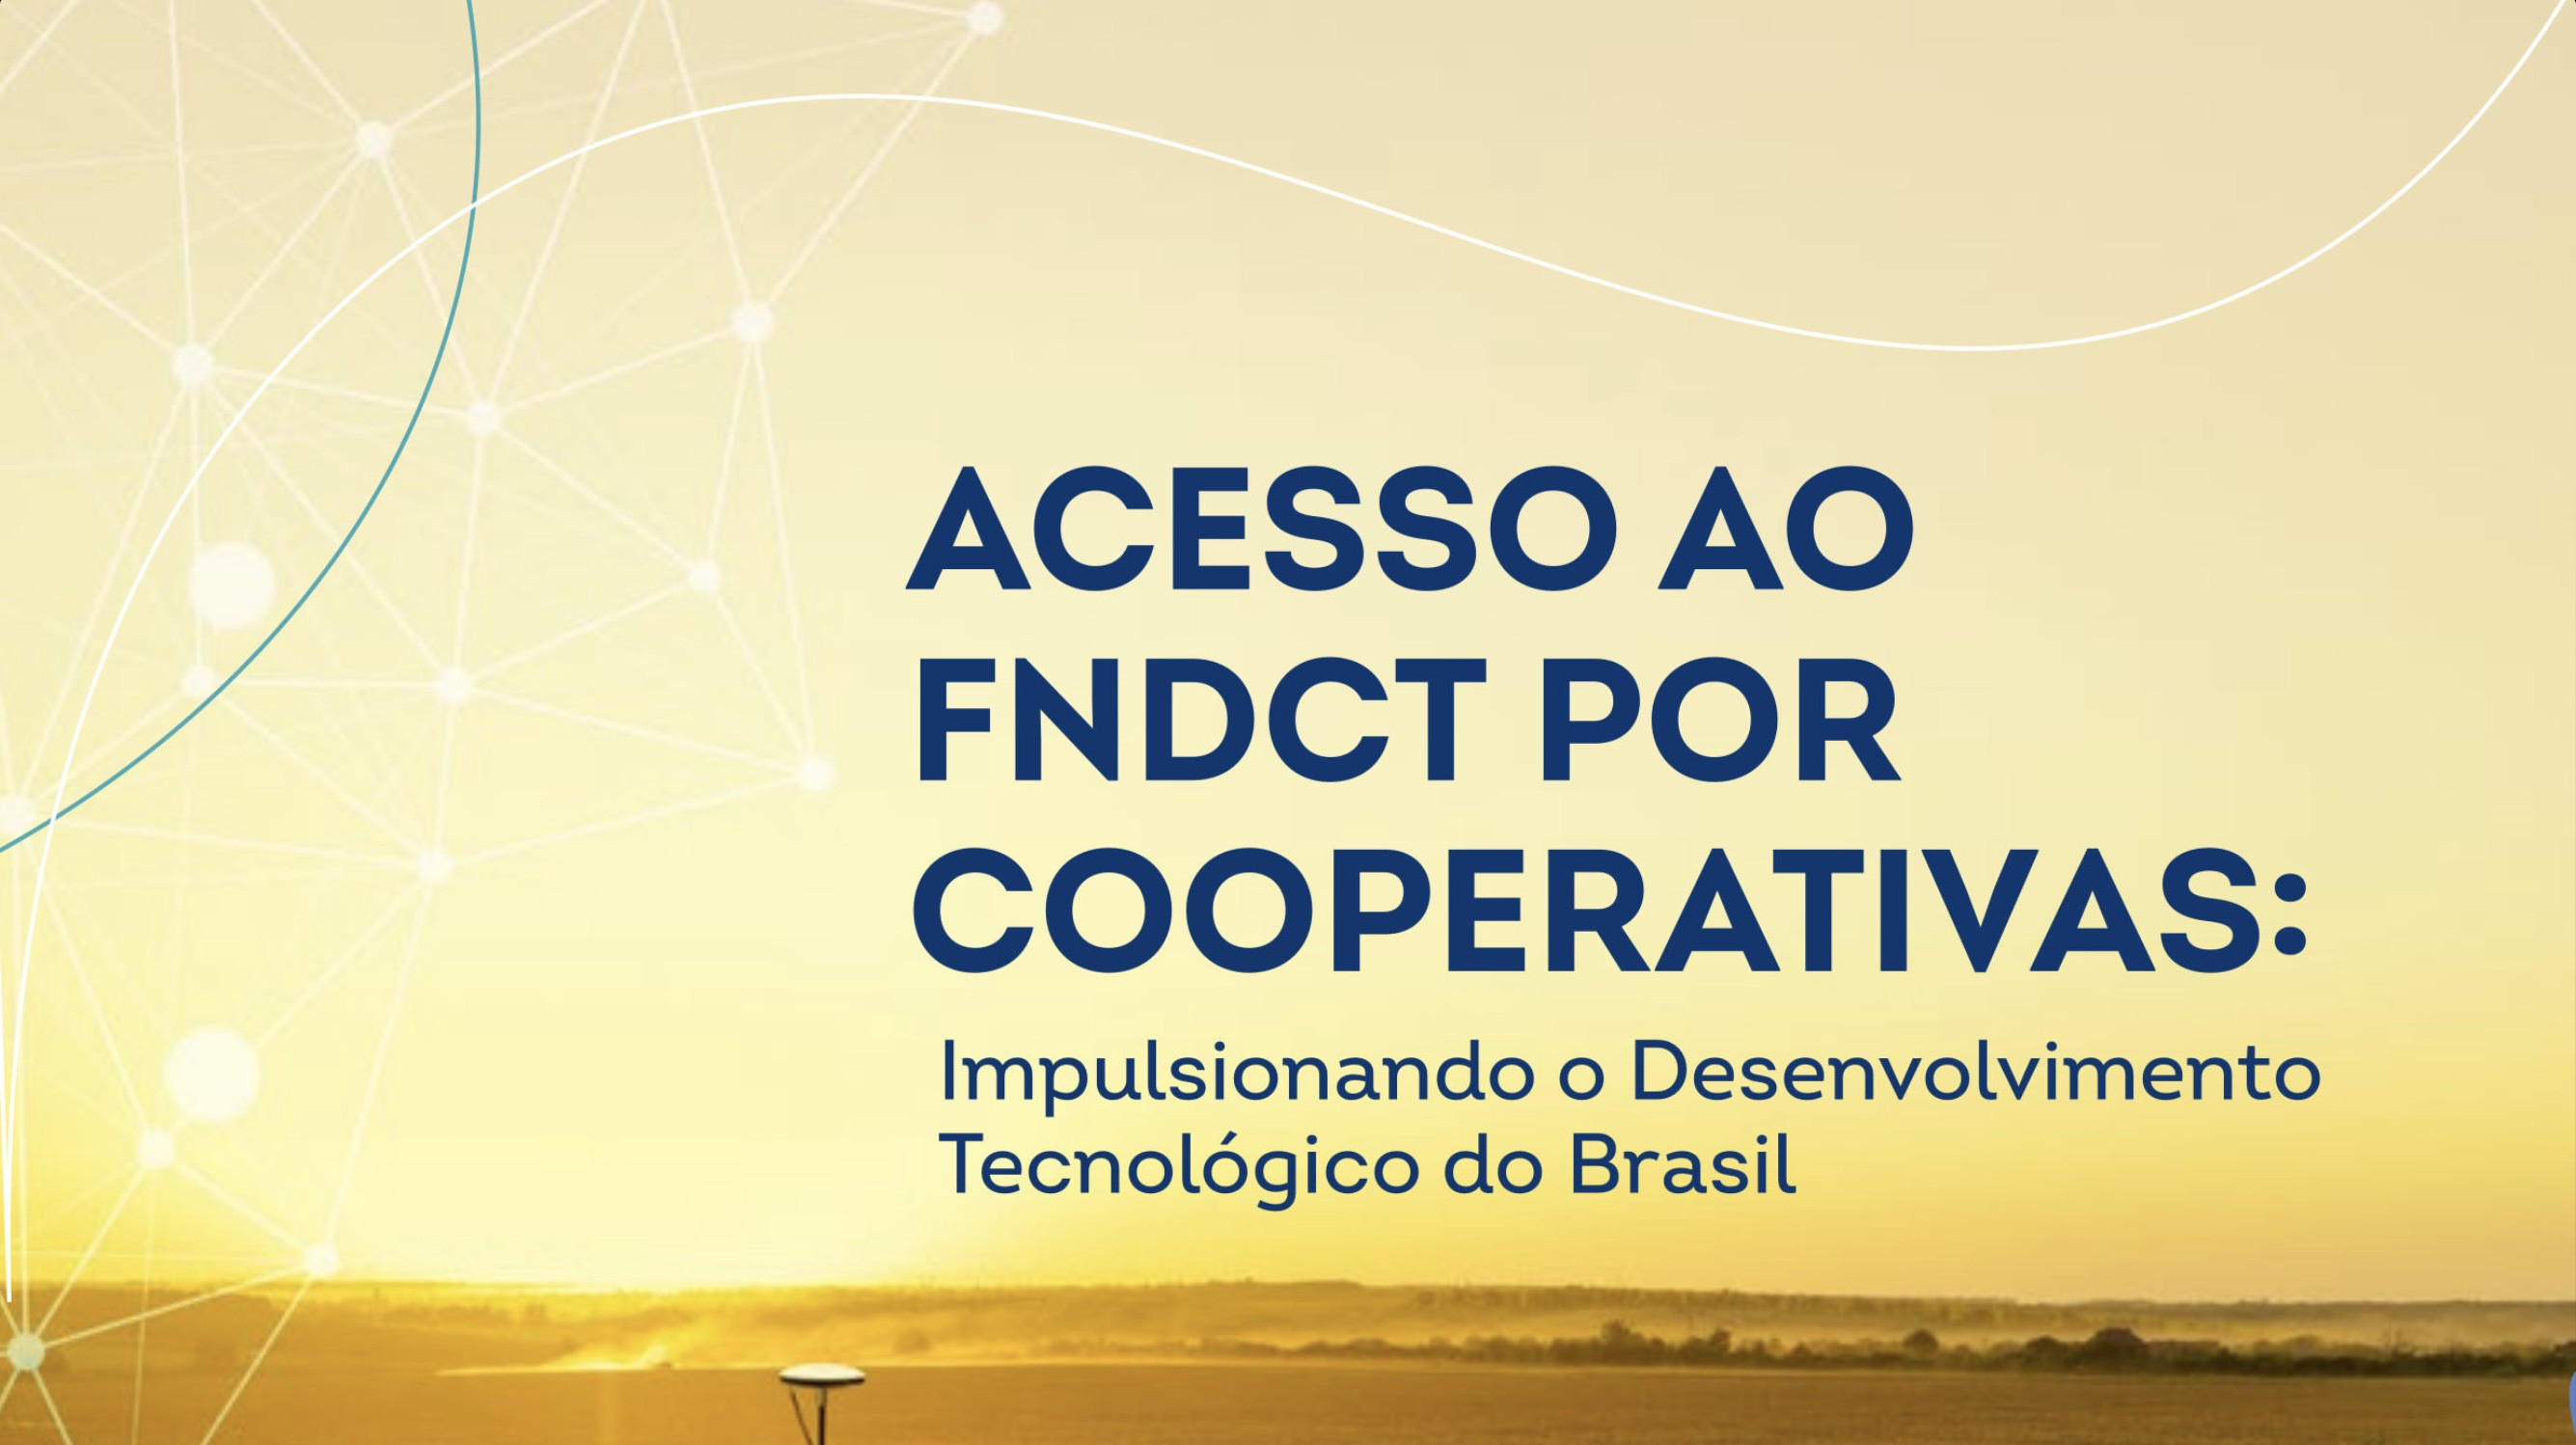  Capa da publicação elaborada pelo Sistema OCB sobre a participação de cooperativas no FNDCT